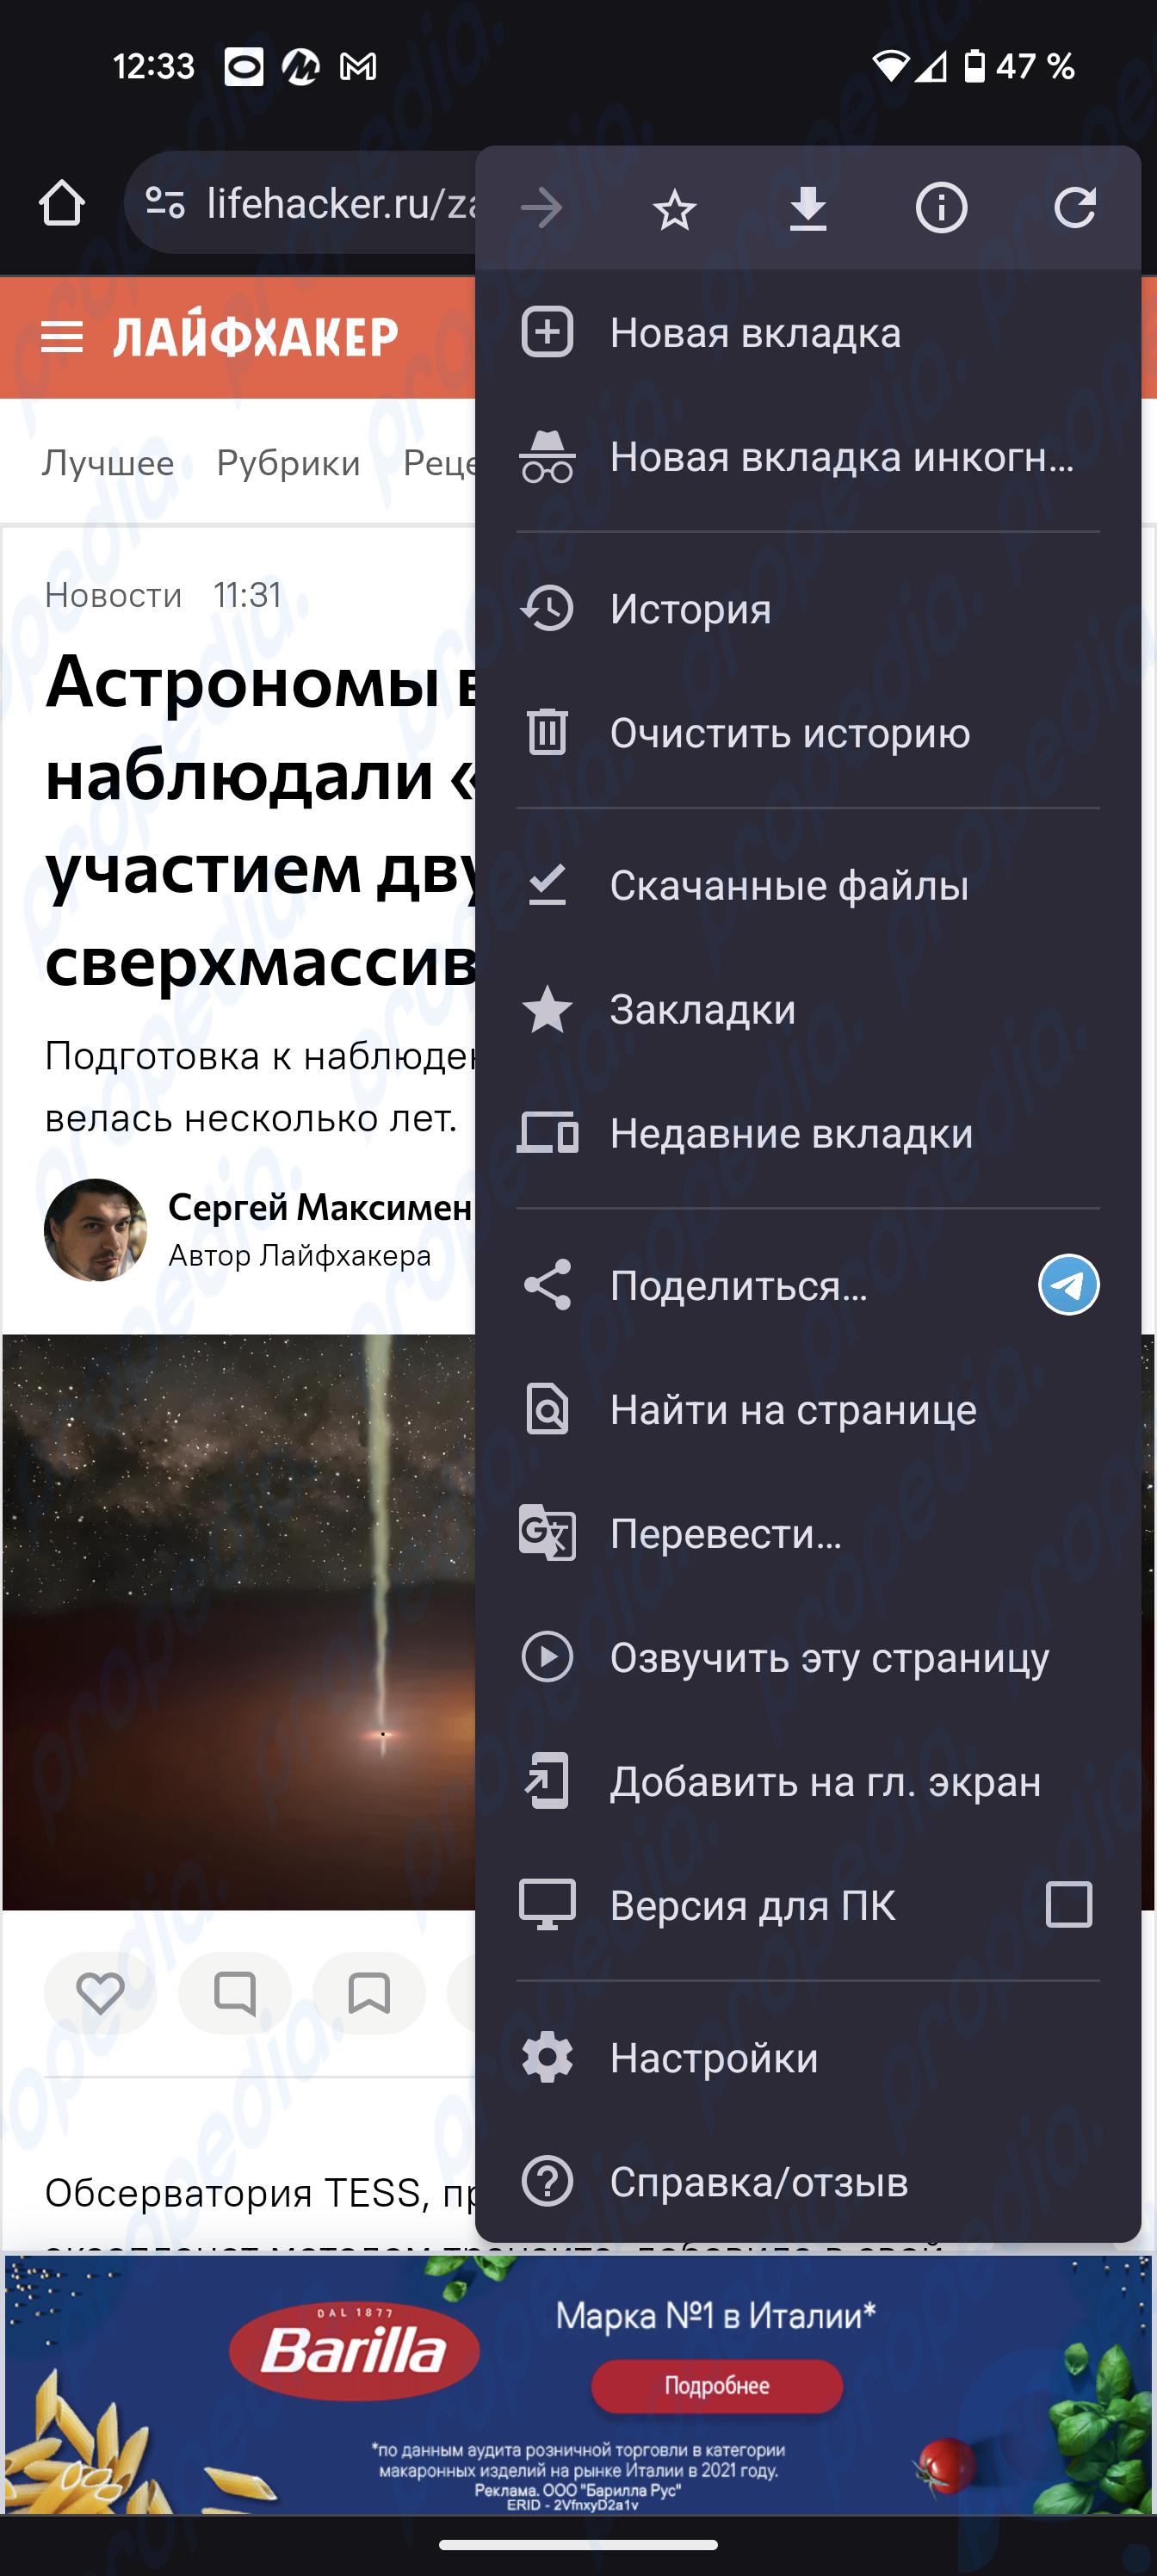 Le navigateur Chrome sur Android a appris à lire le contenu des pages Web en russe